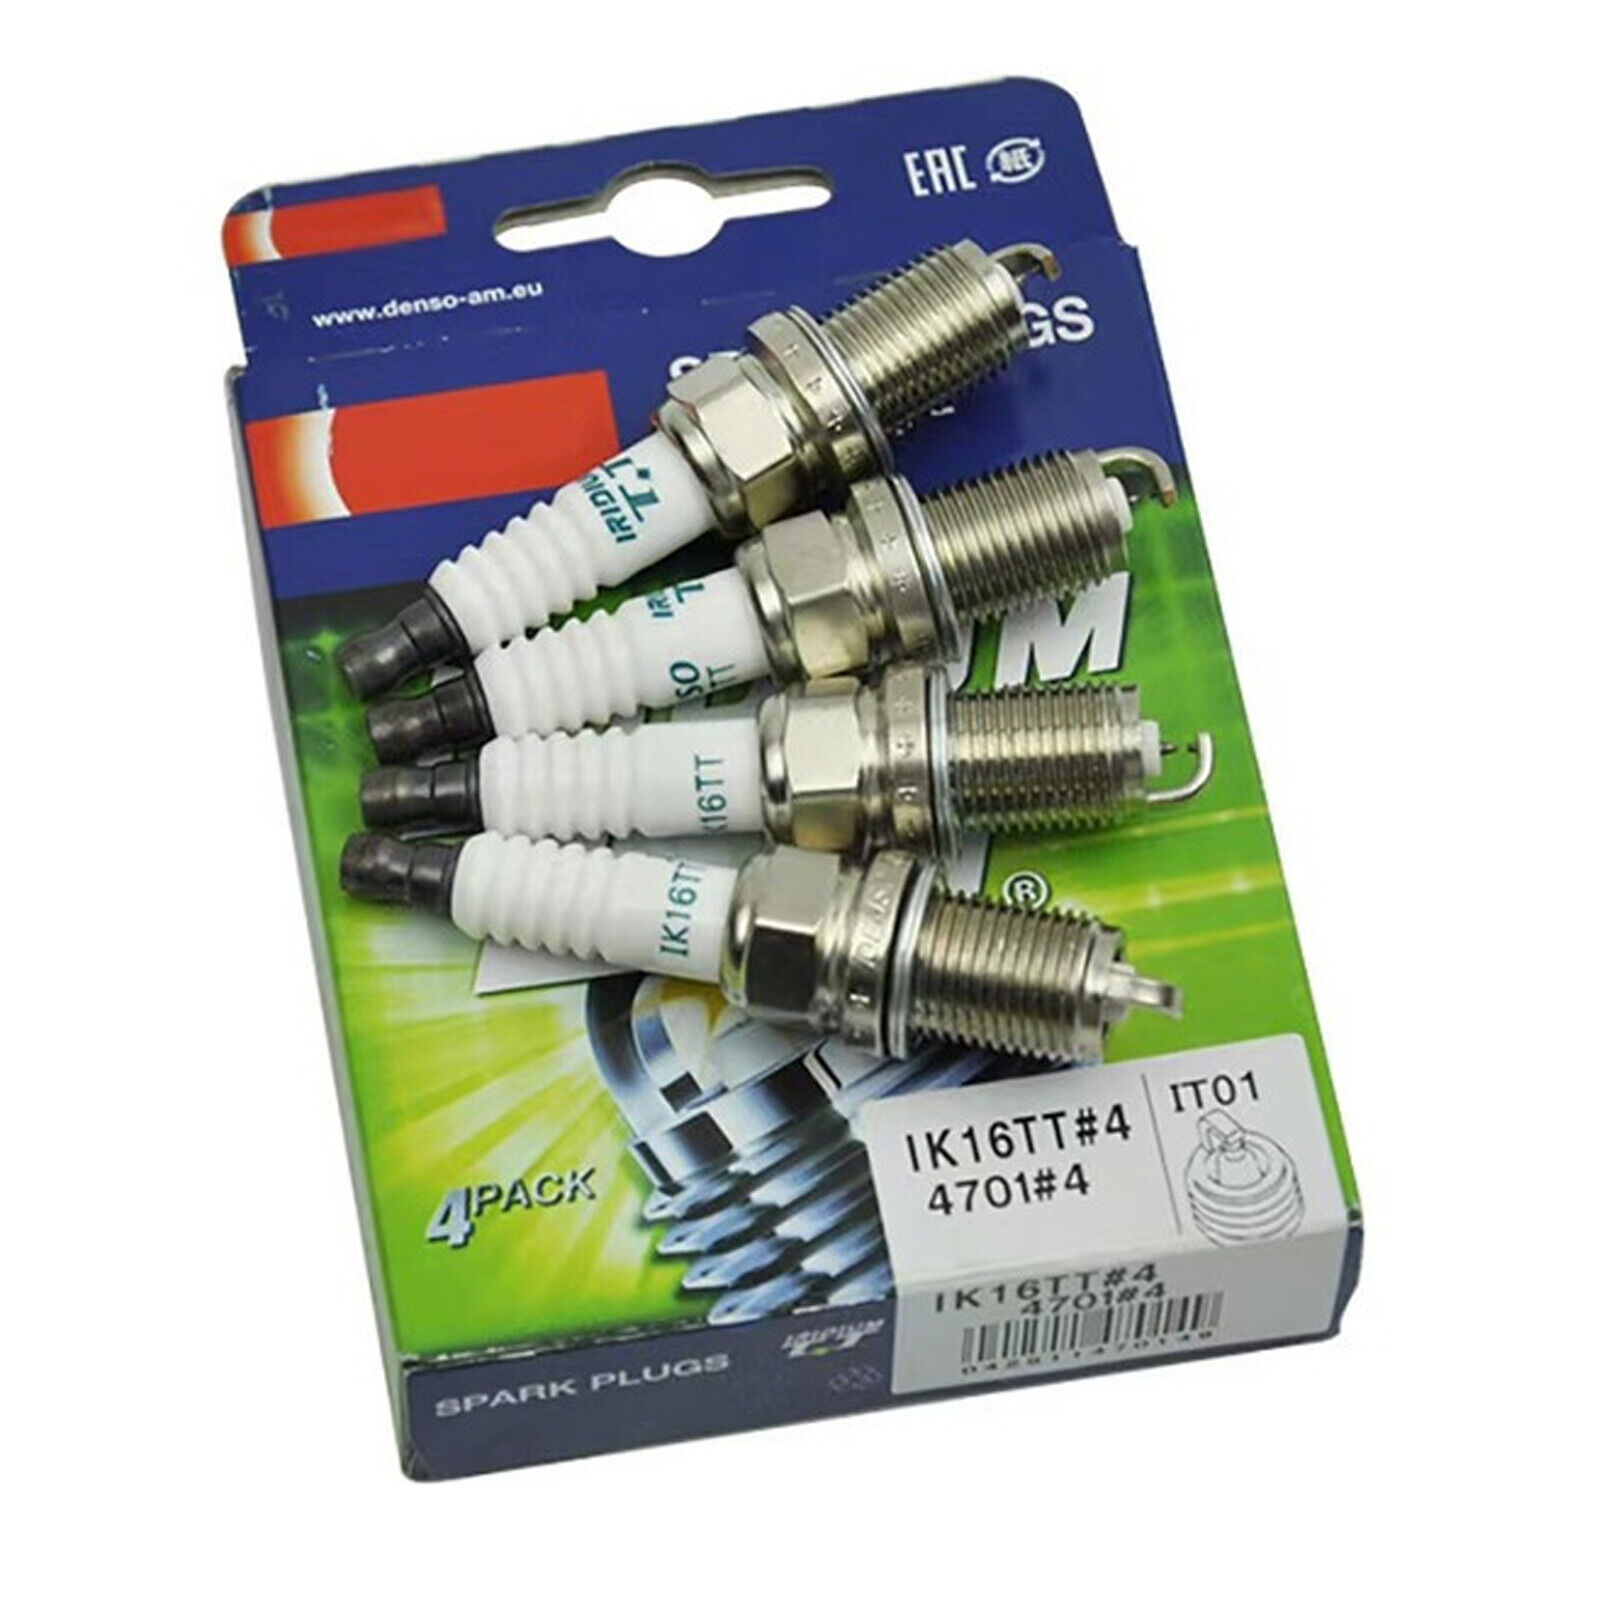 For 4X Denso 4701 Iridium TT Spark Plugs 0000-18-BP01 0000-18-F287 IK16TT 1.5L